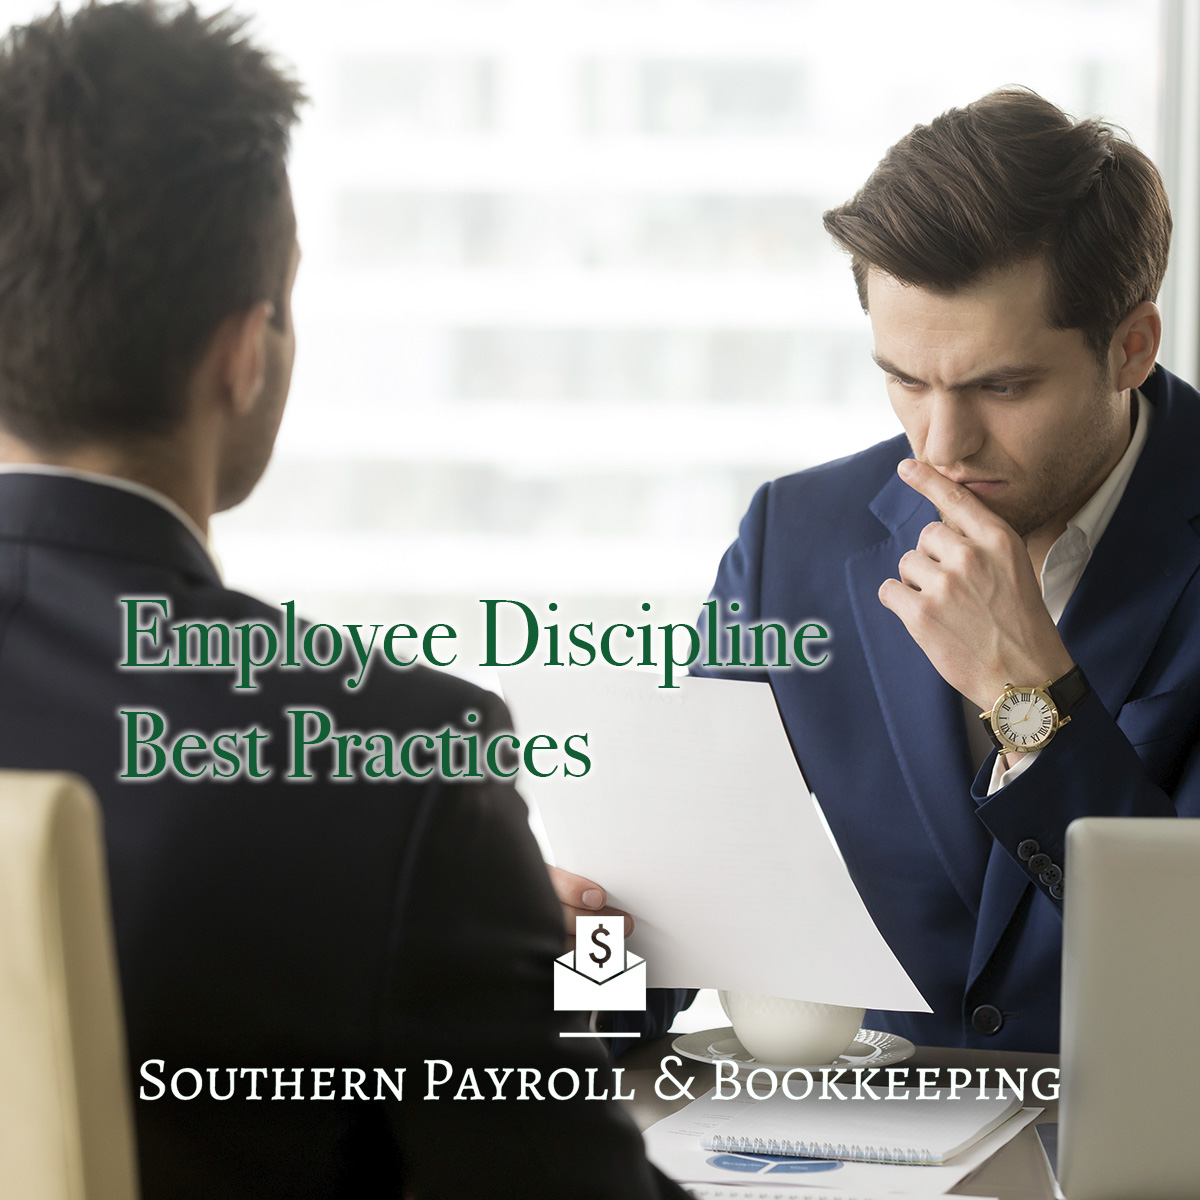 Employee Discipline Best Practices